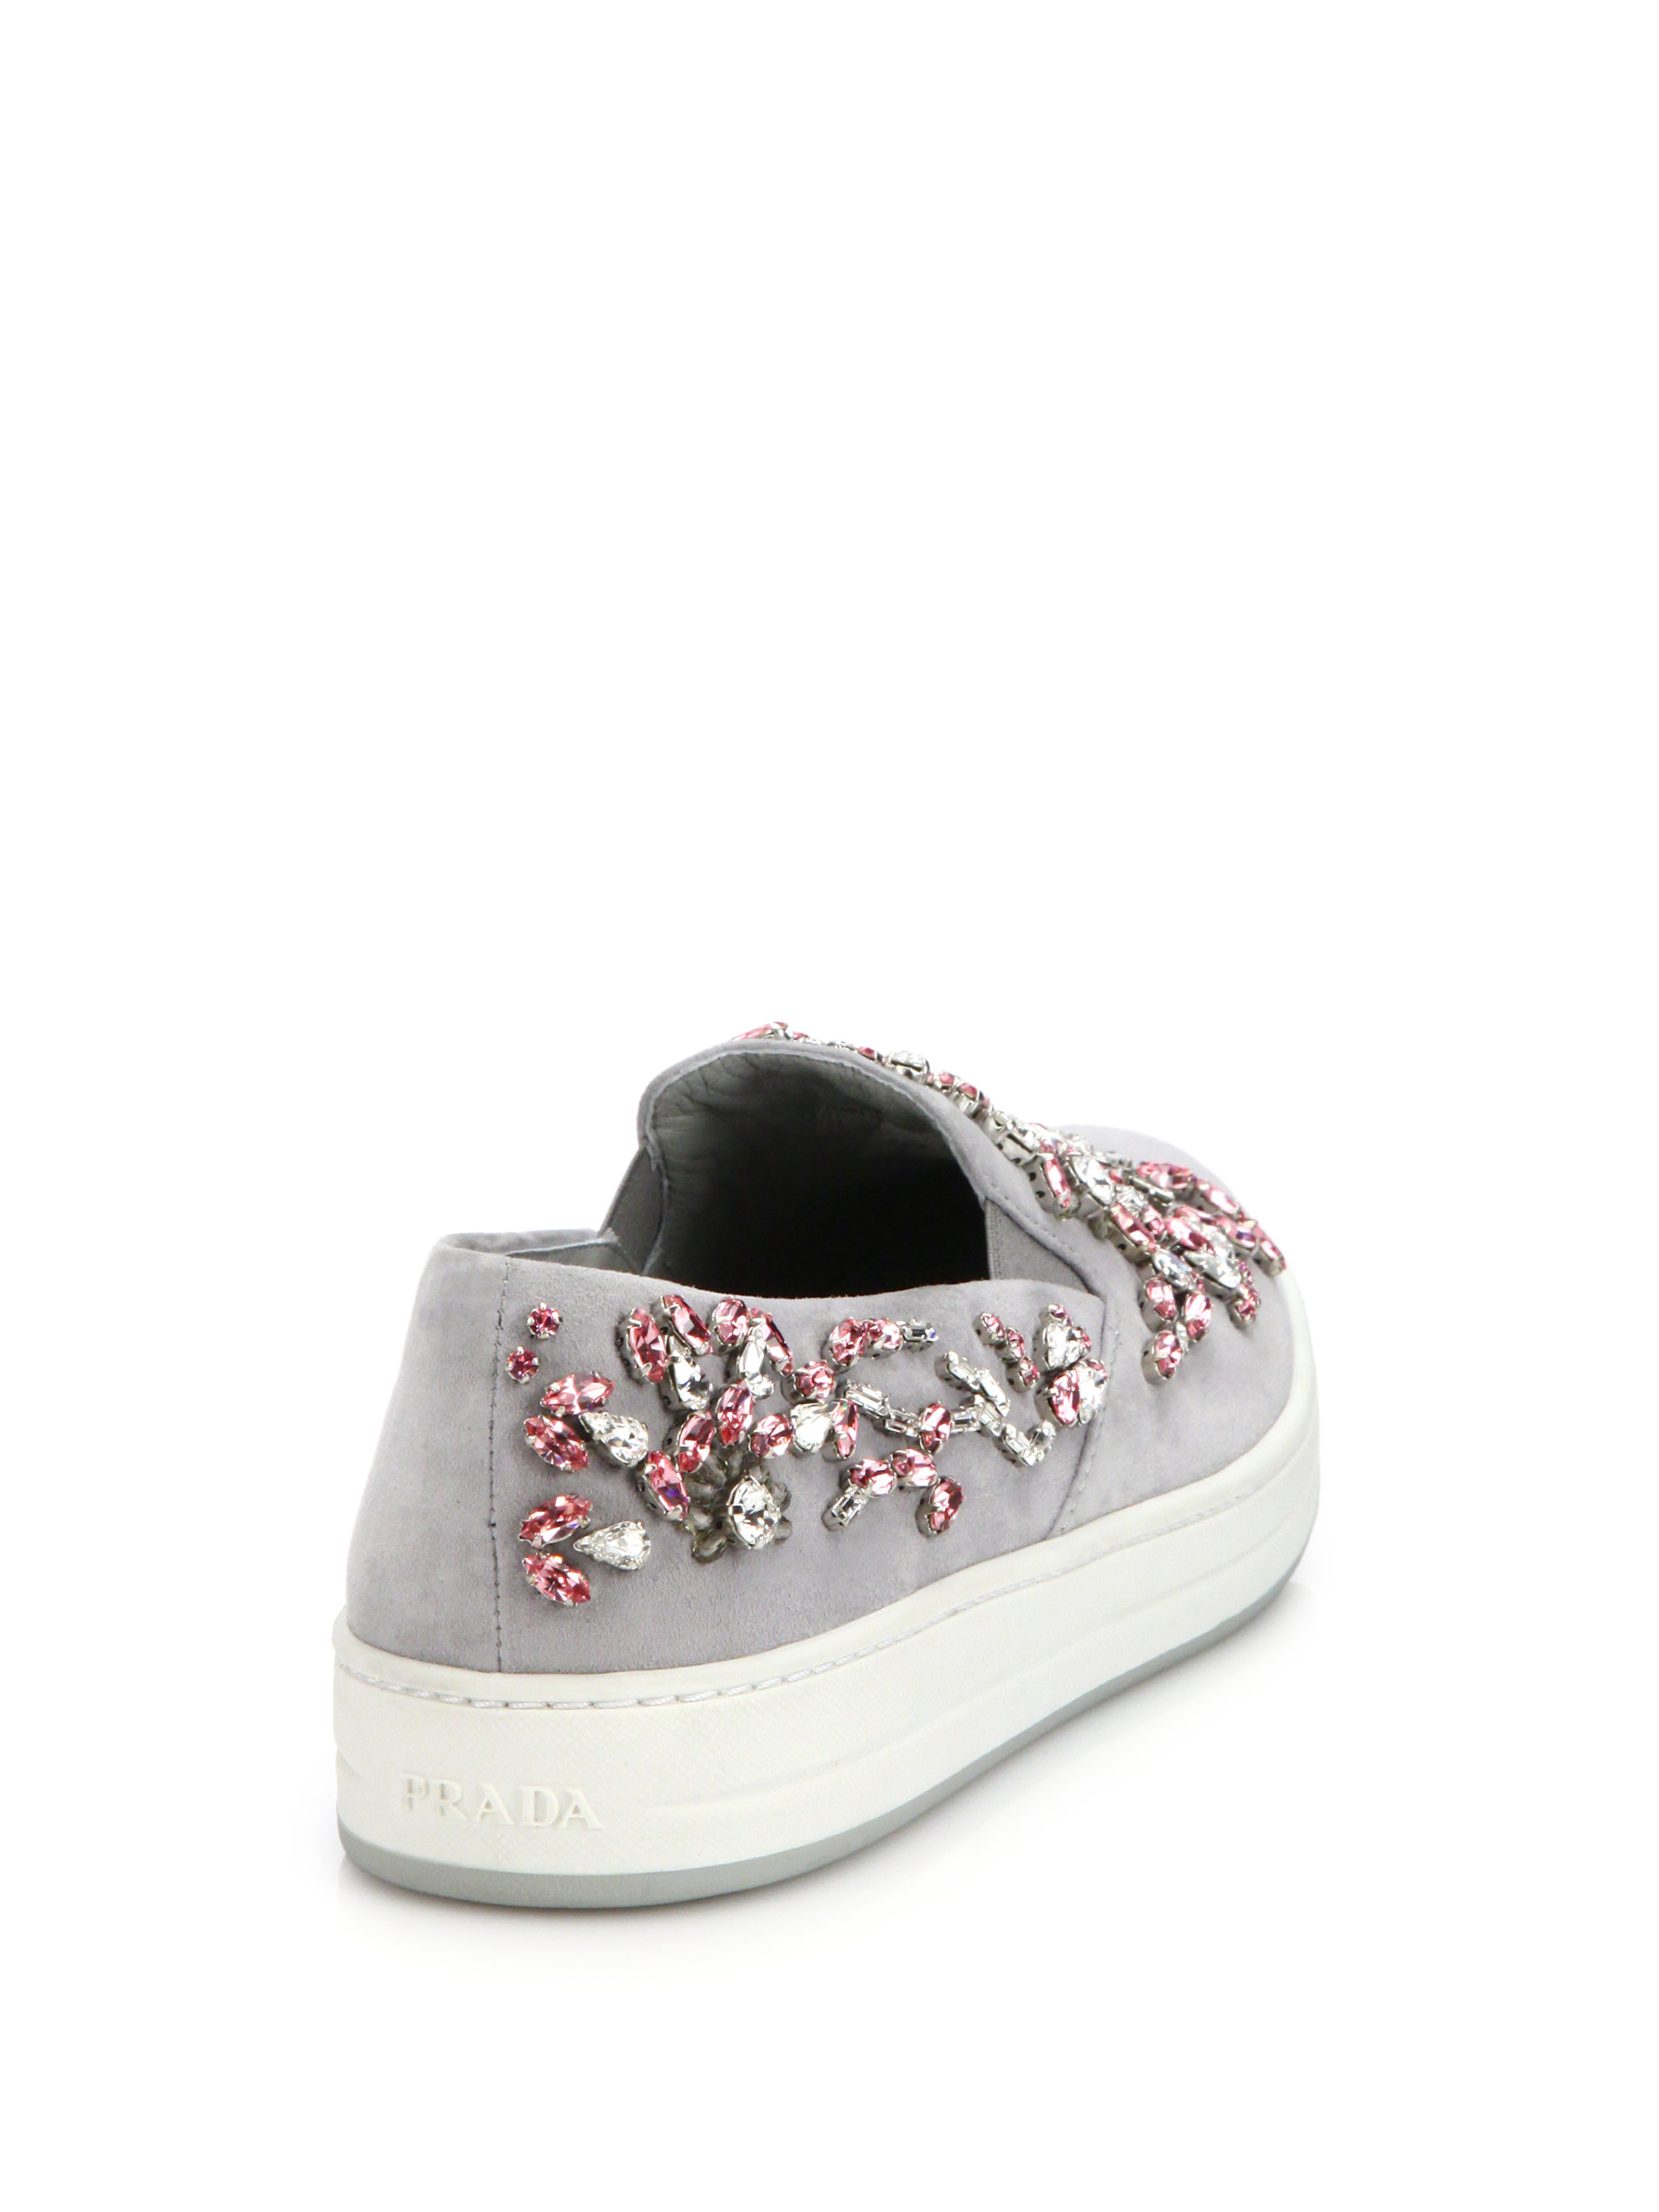 Prada Jeweled Suede Slip-on Sneakers in Grey (Pink) - Lyst